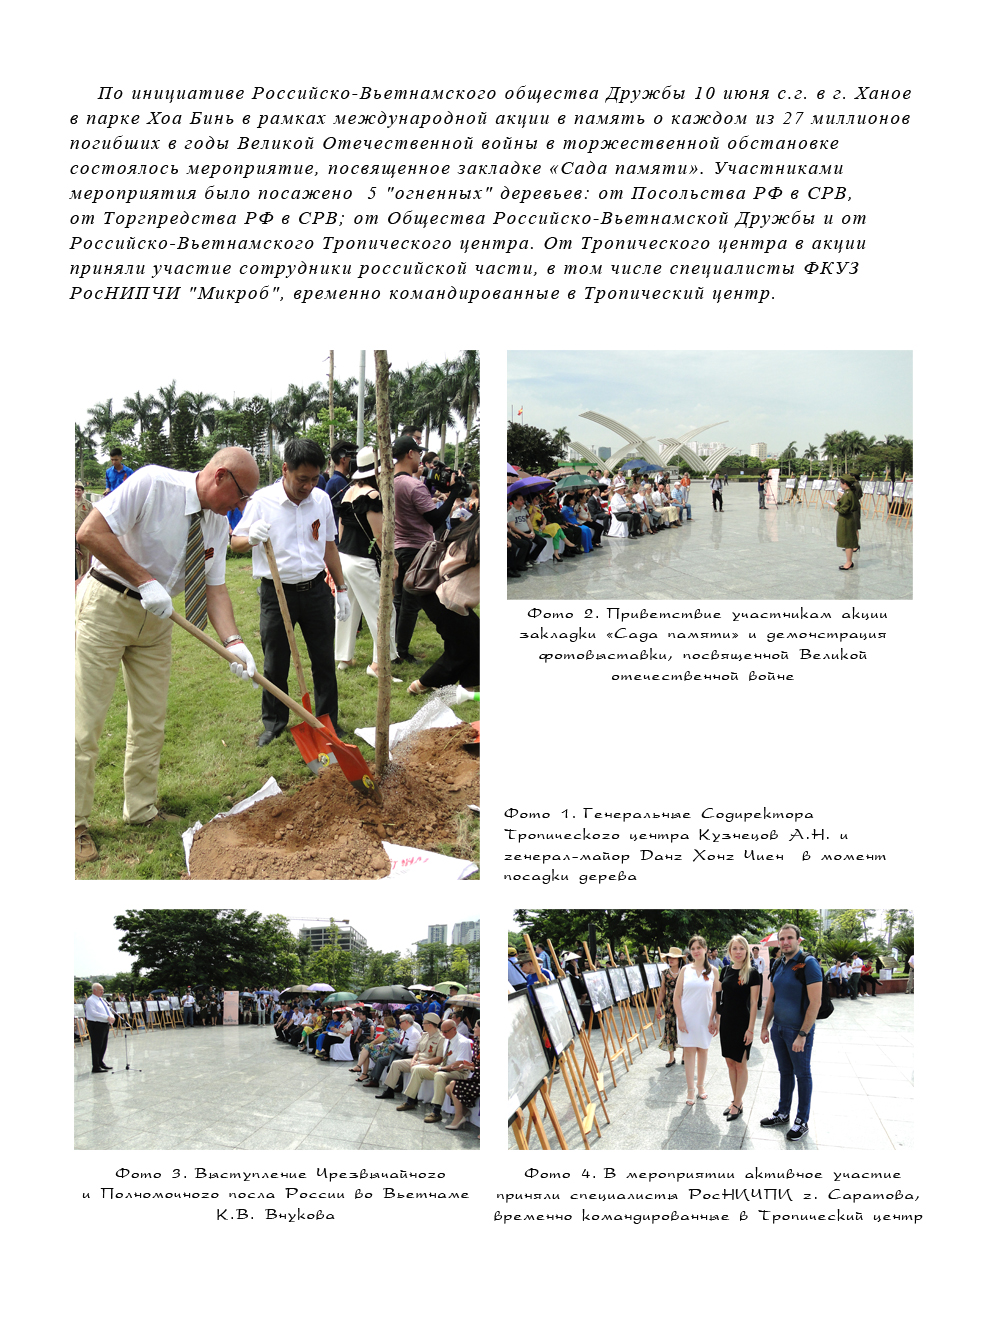 Мероприятие, посвященное закладке "Сада памяти" в парке Хоа Бинь